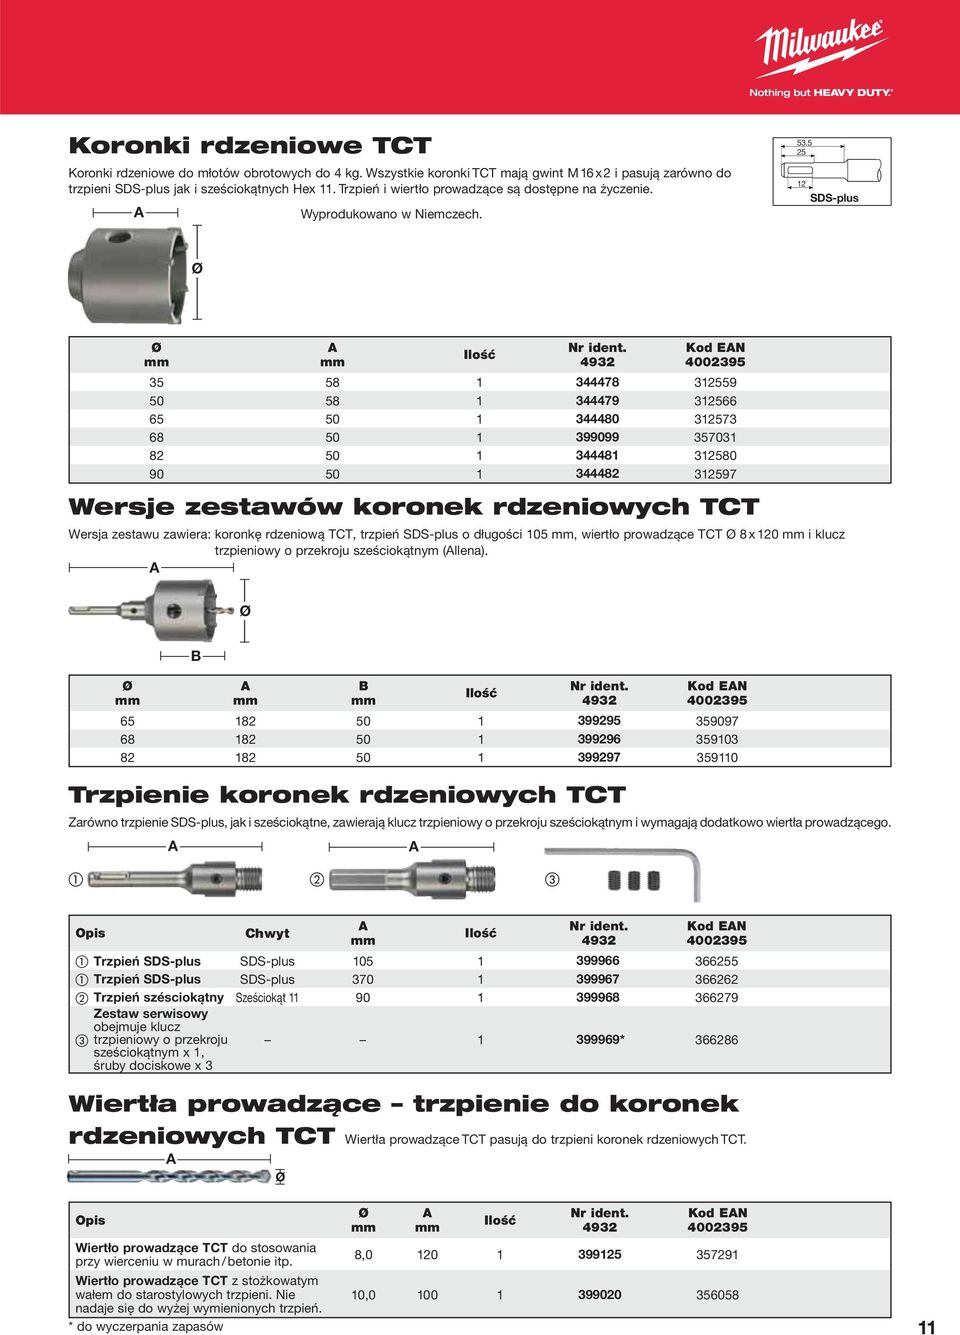 5 25 12 SDS-plus Wersje zestawów koronek rdzeniowych TCT Wersja zestawu zawiera: koronkę rdzeniową TCT, trzpień SDS-plus o długości 105, wiertło prowadzące TCT 8 x 120 i klucz trzpieniowy o przekroju